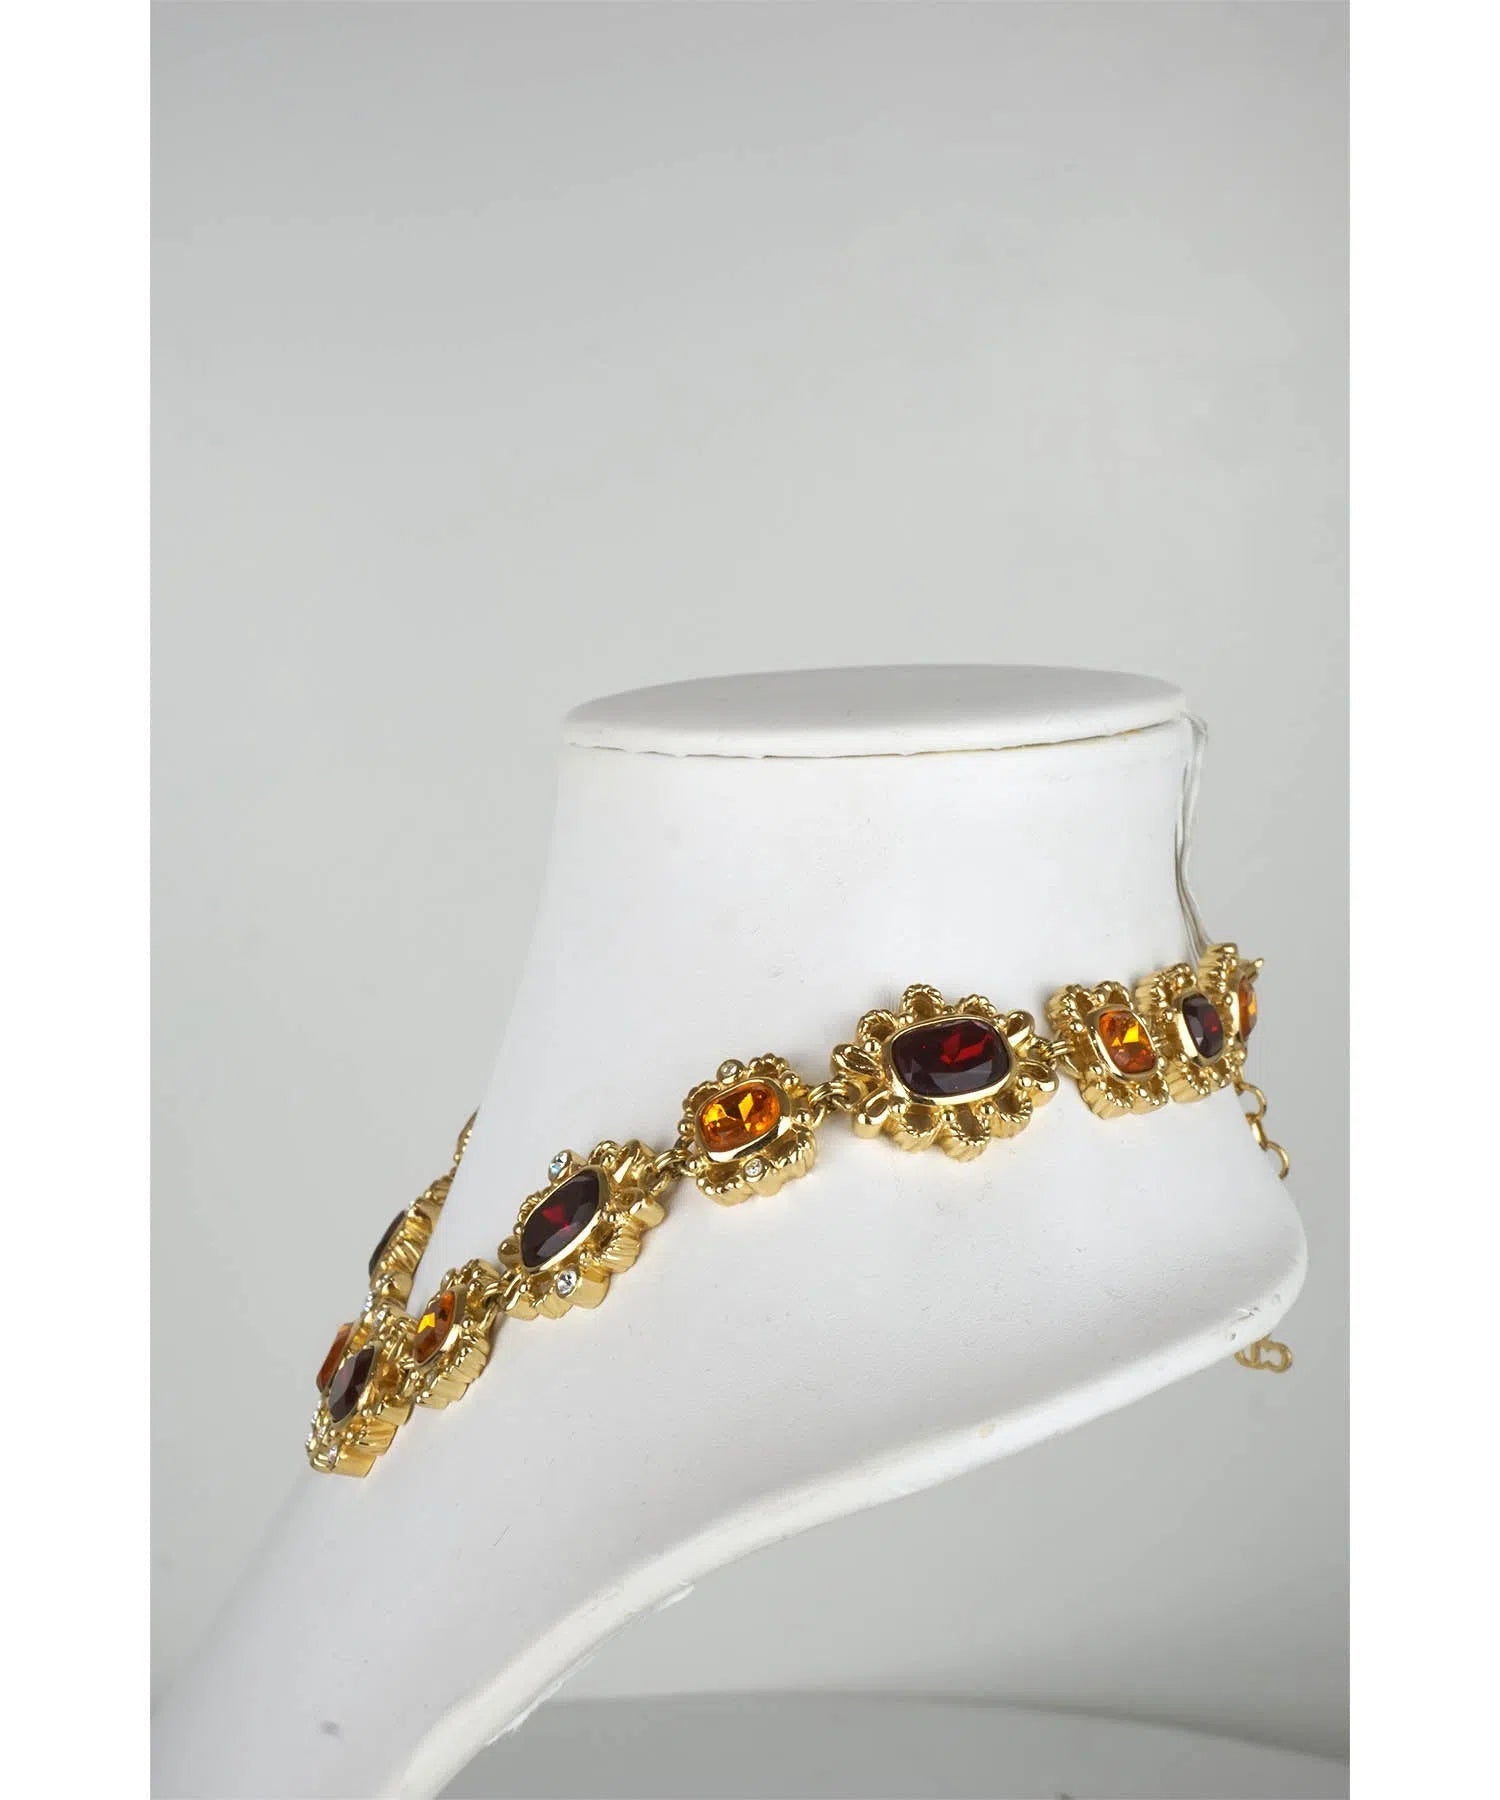 Christian Dior Rare Vintage Crystal Embellished Necklace 1960's-1970's